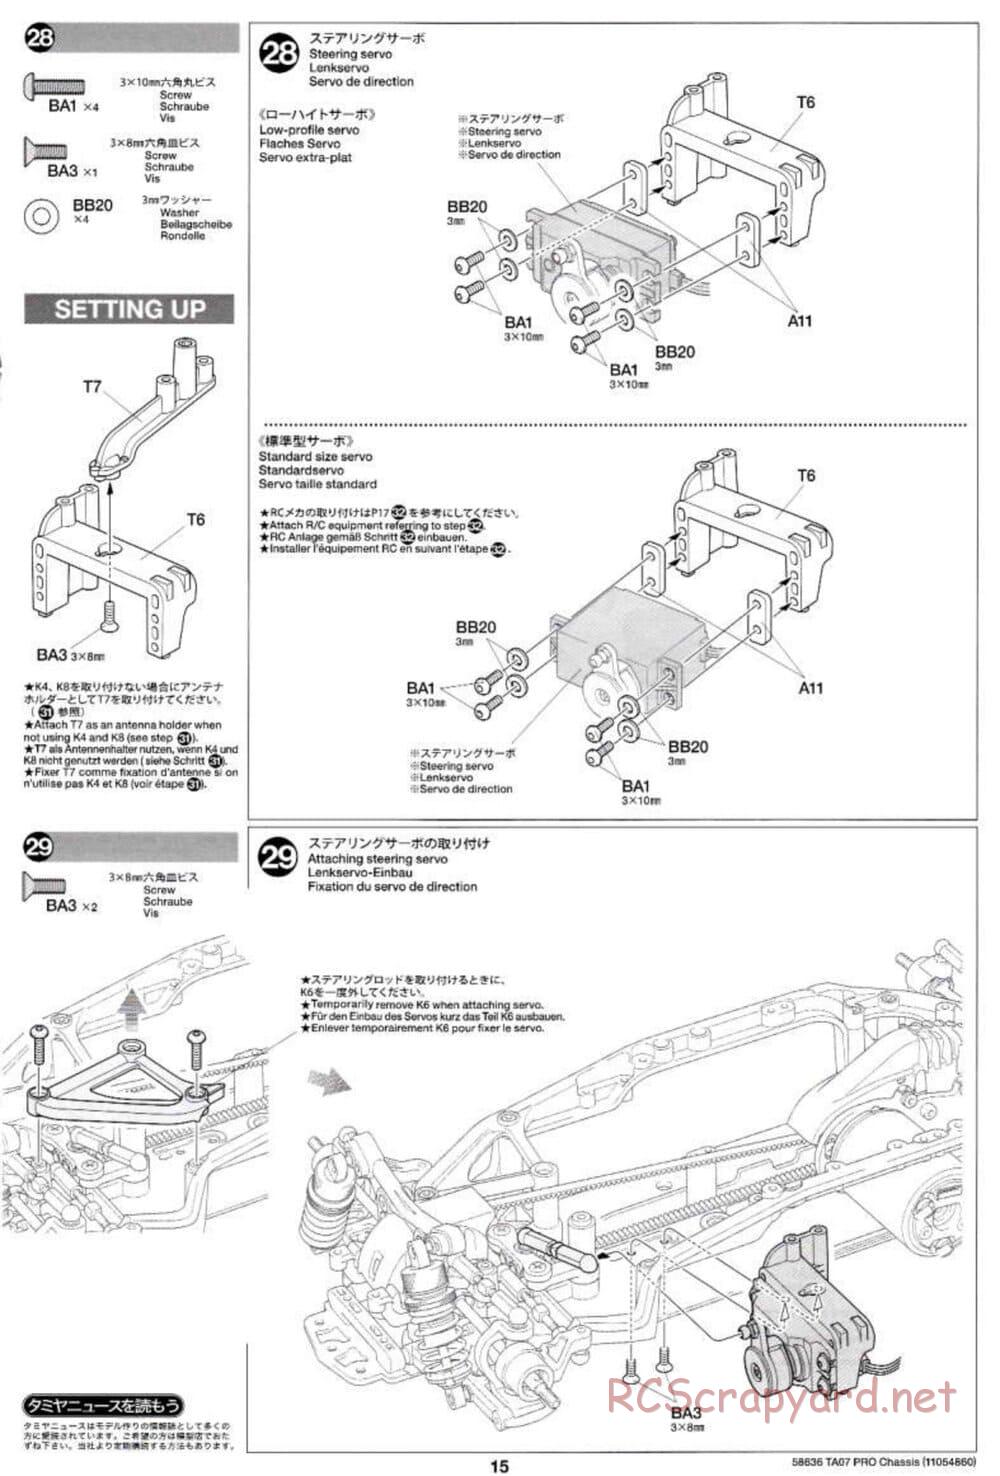 Tamiya - TA07 Pro Chassis - Manual - Page 15